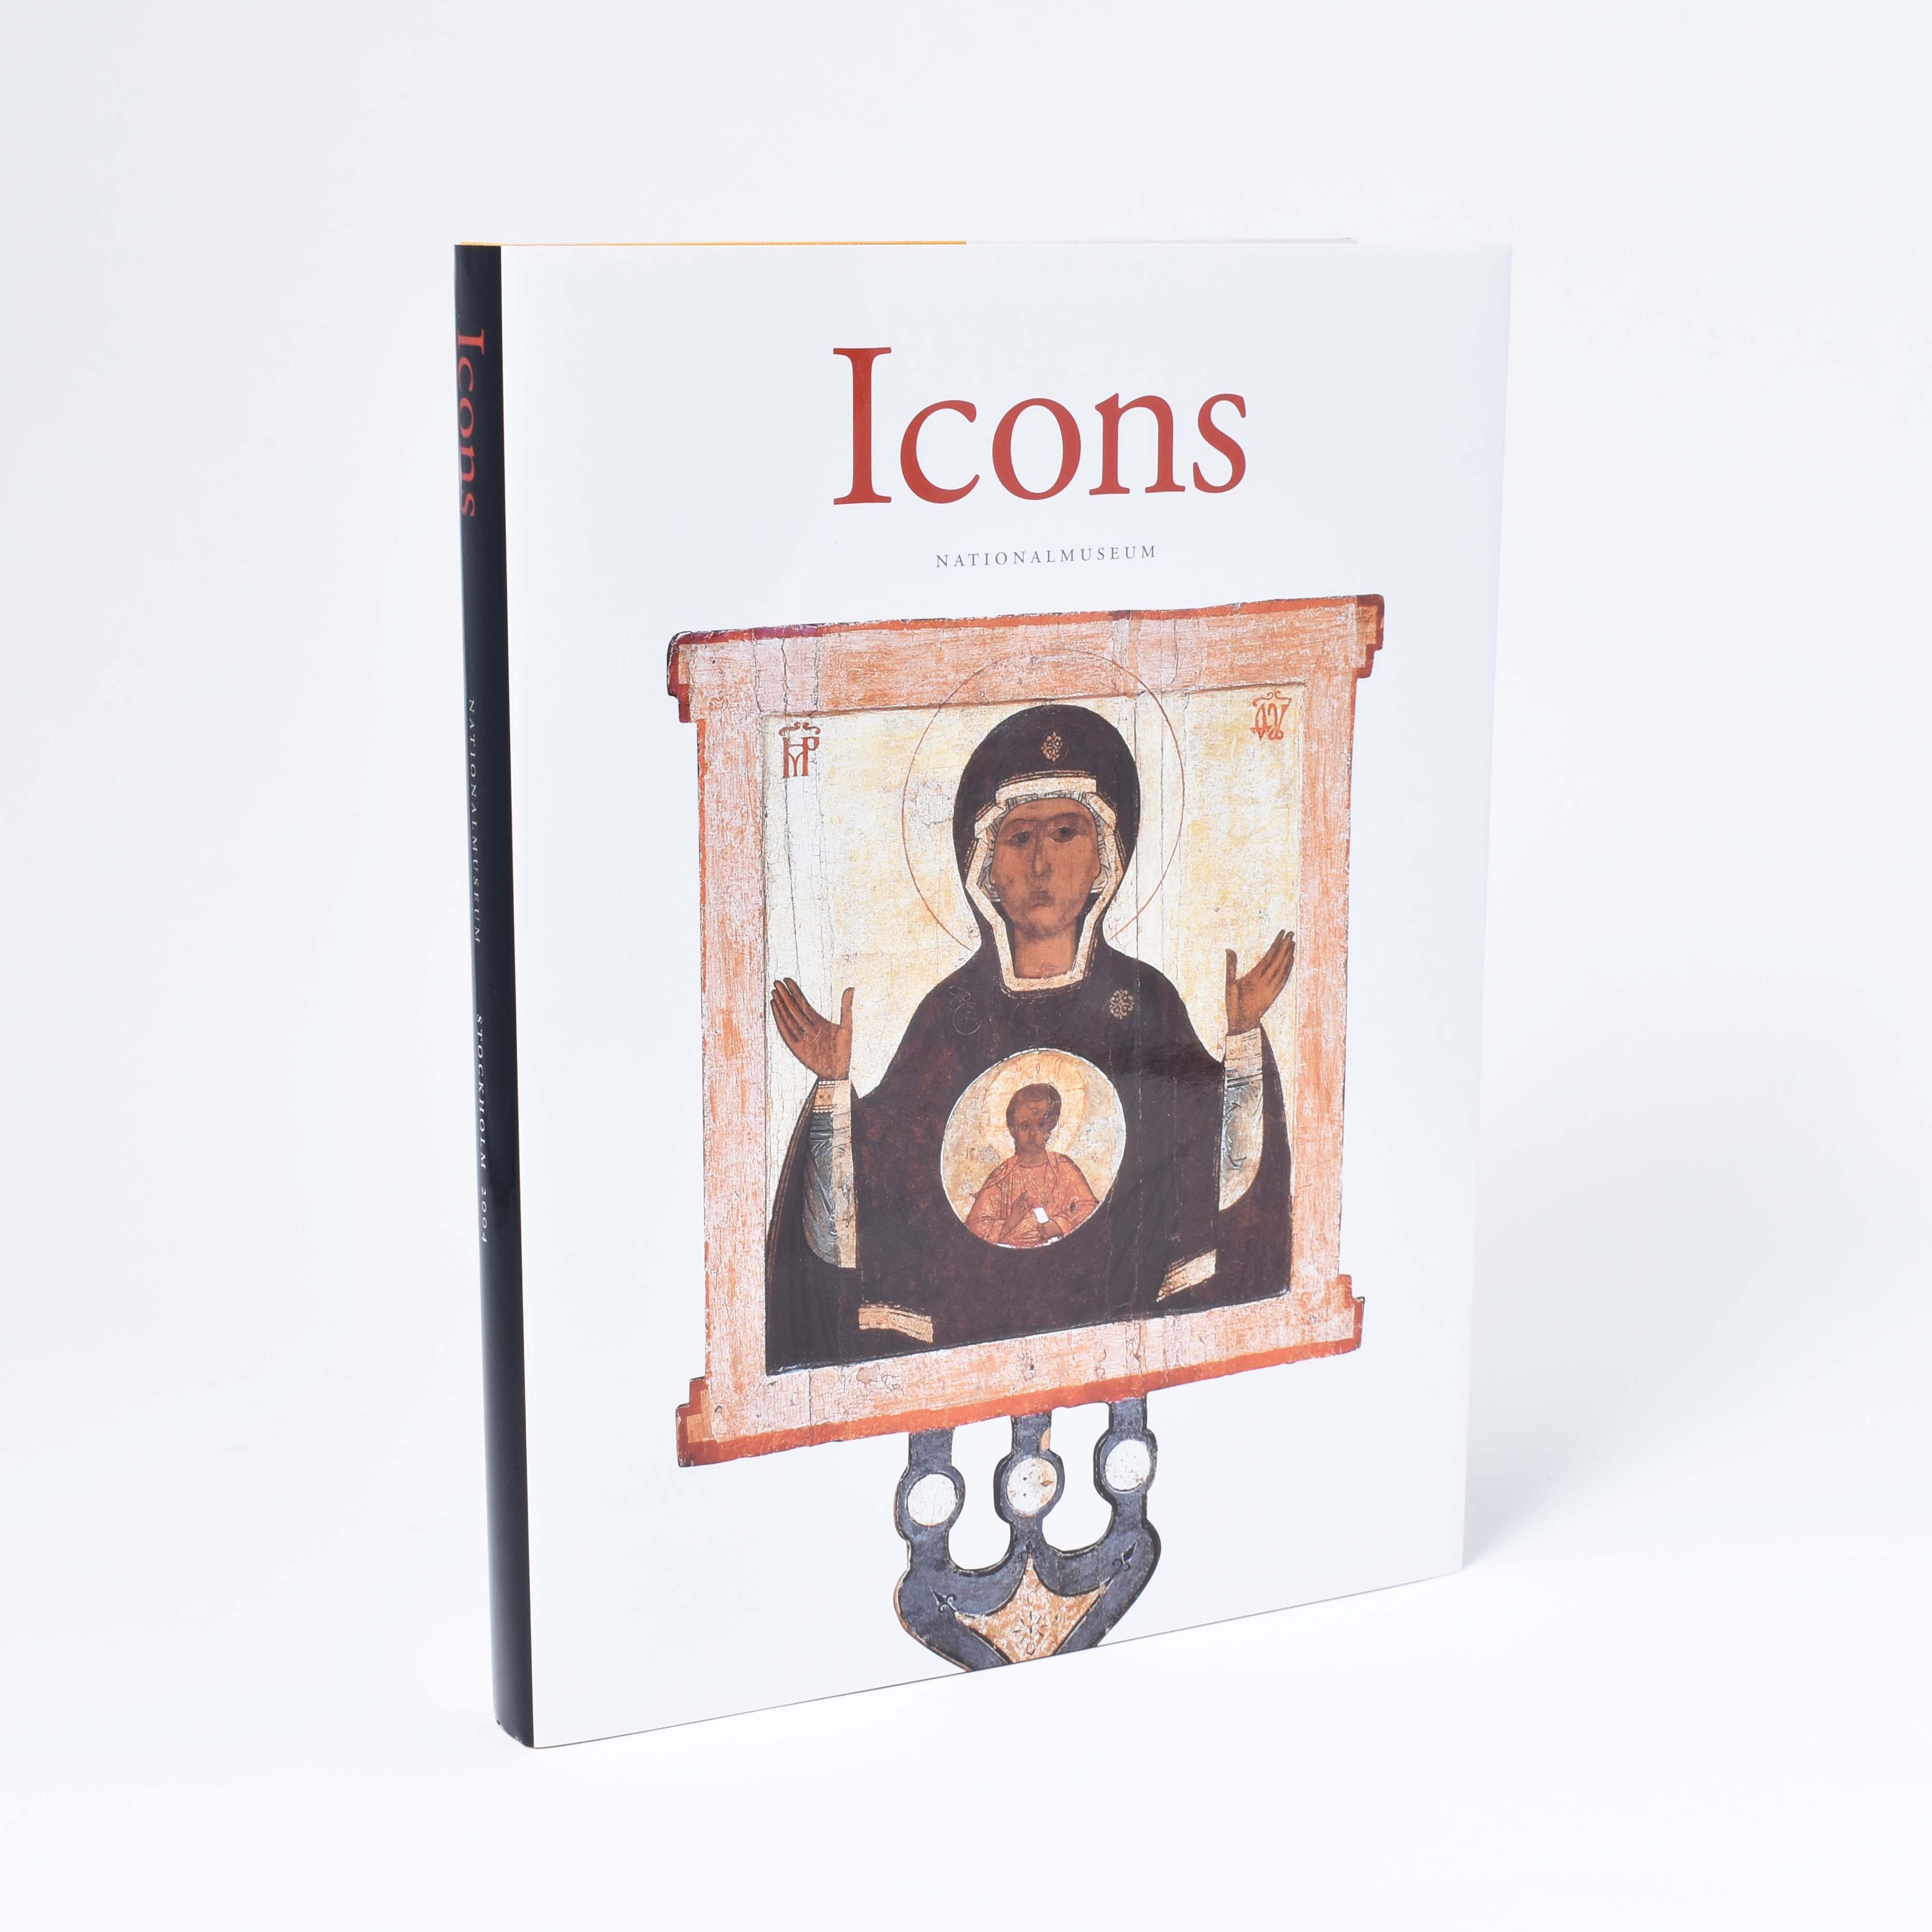 vitt omslag till boken "icons" med ikon på framsidan